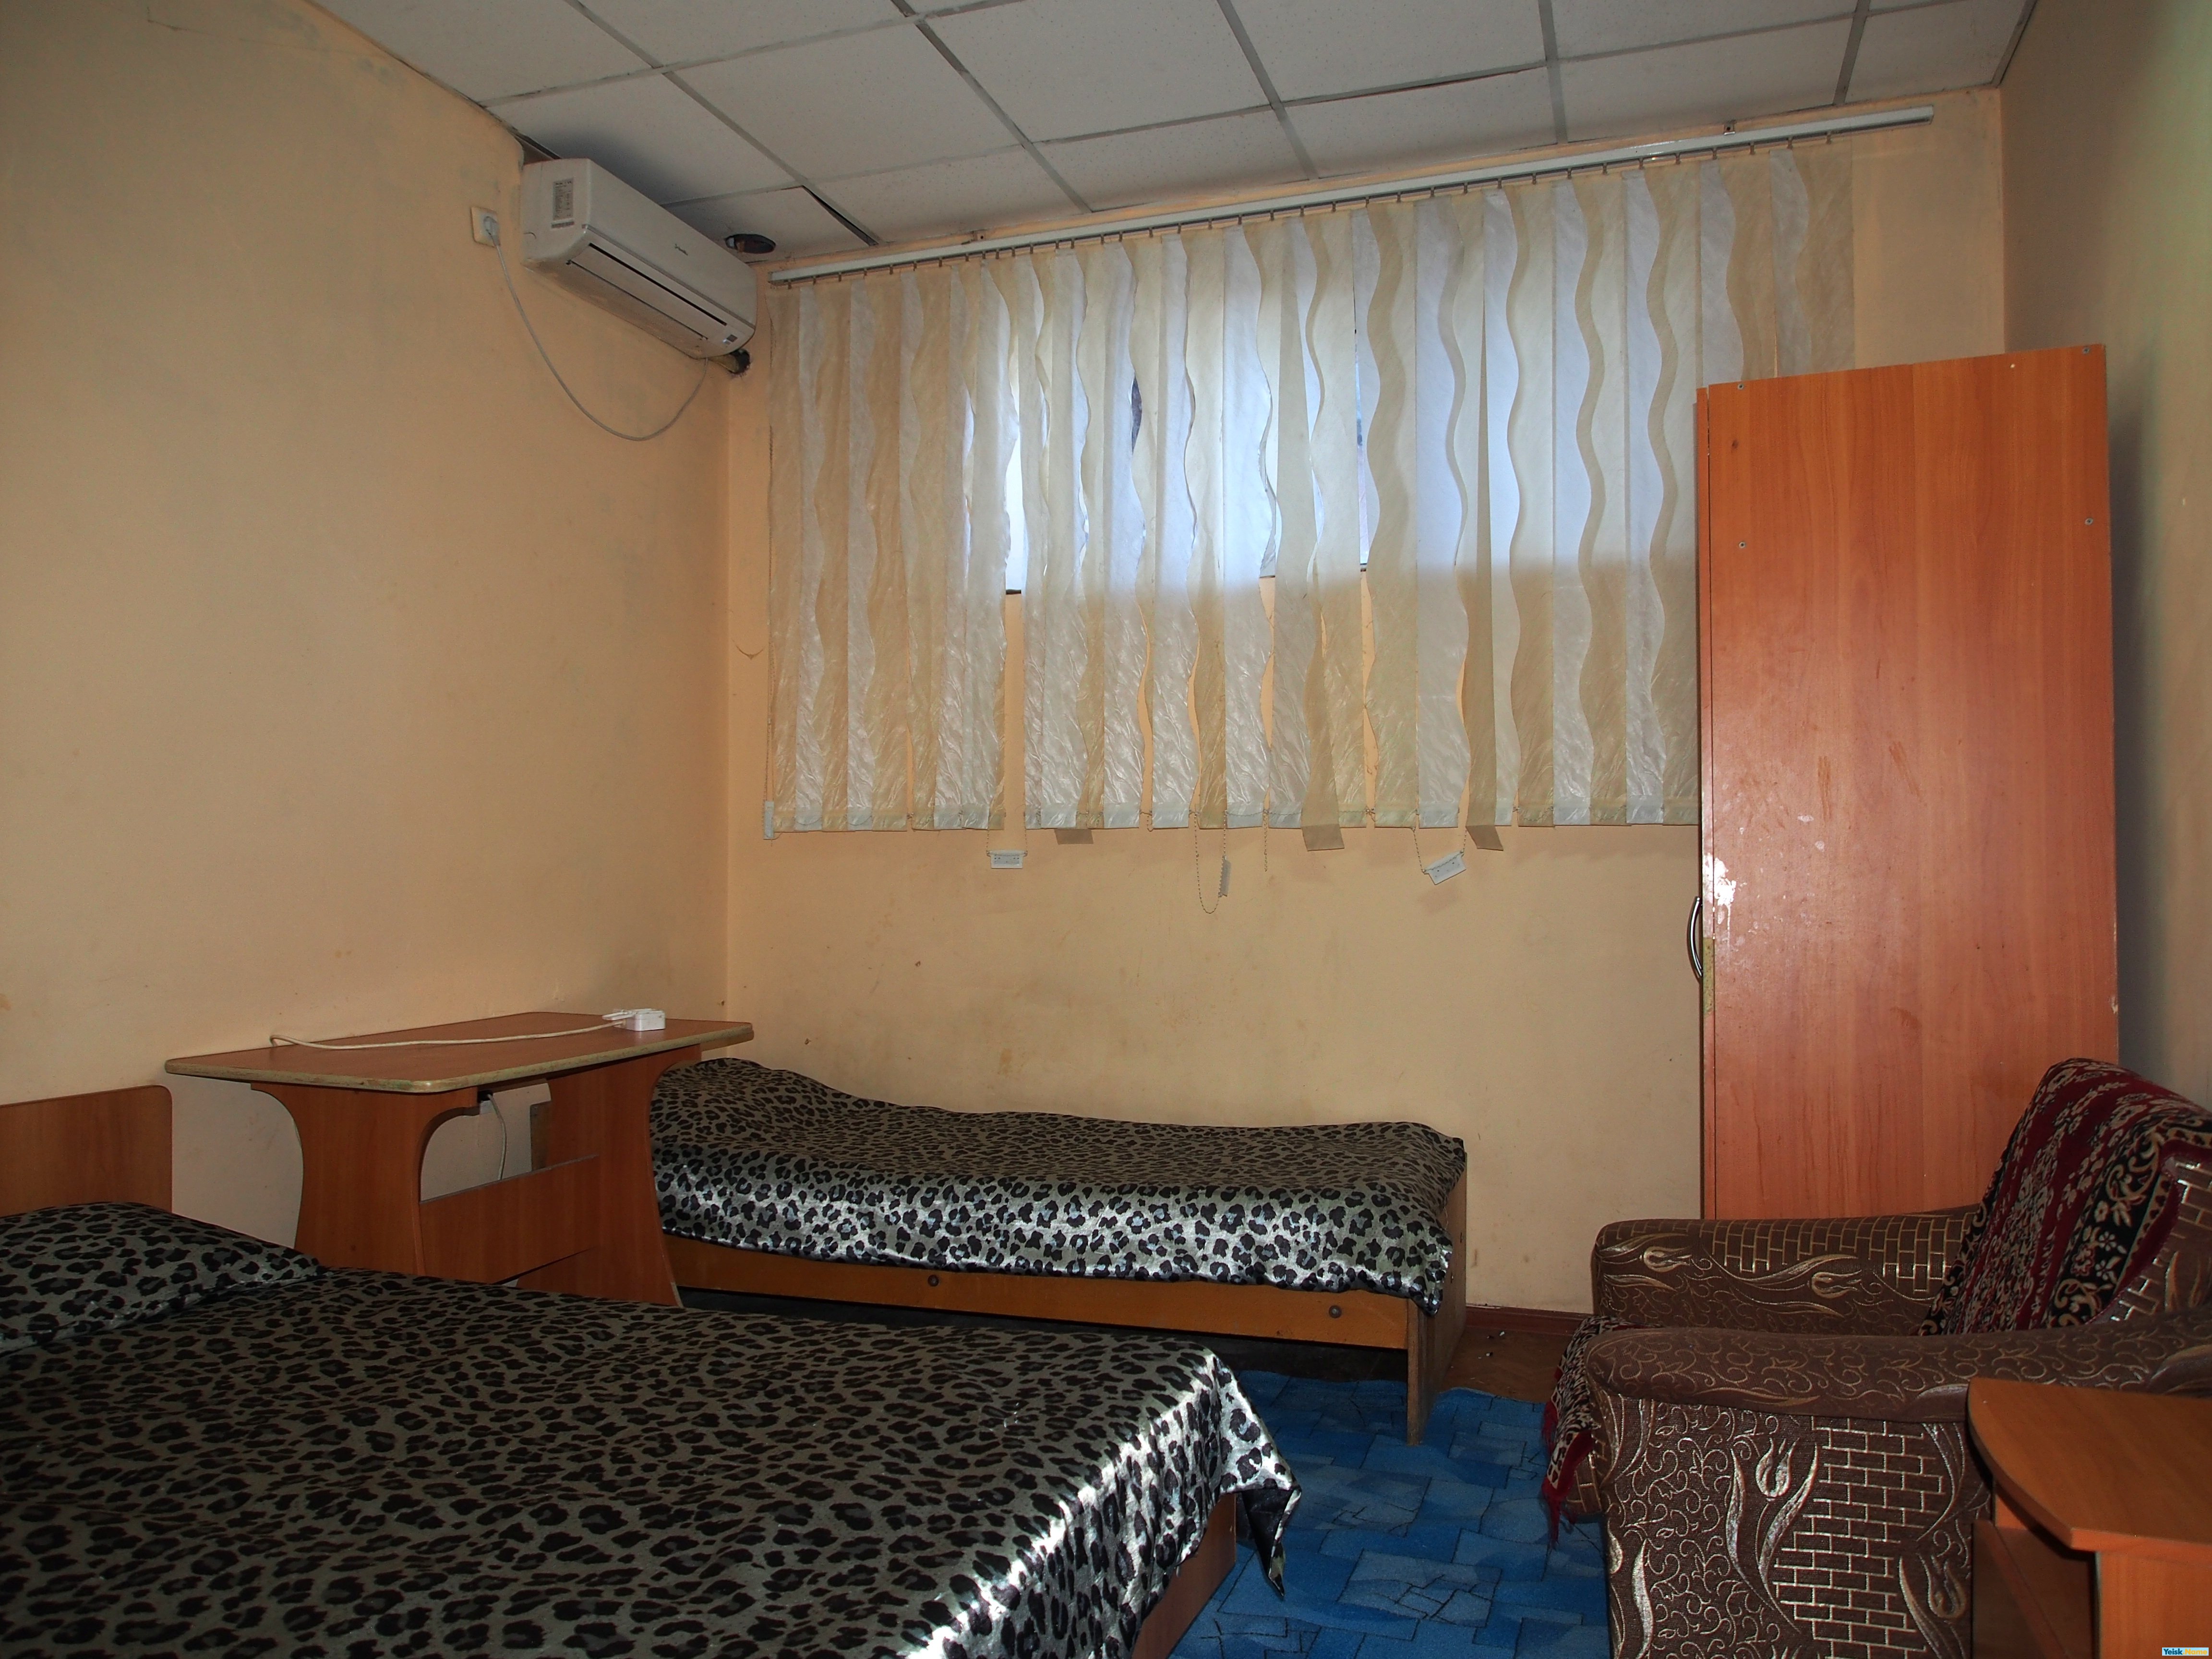 Четырехкомнатная квартира на ул.Калинина Вариант № 184